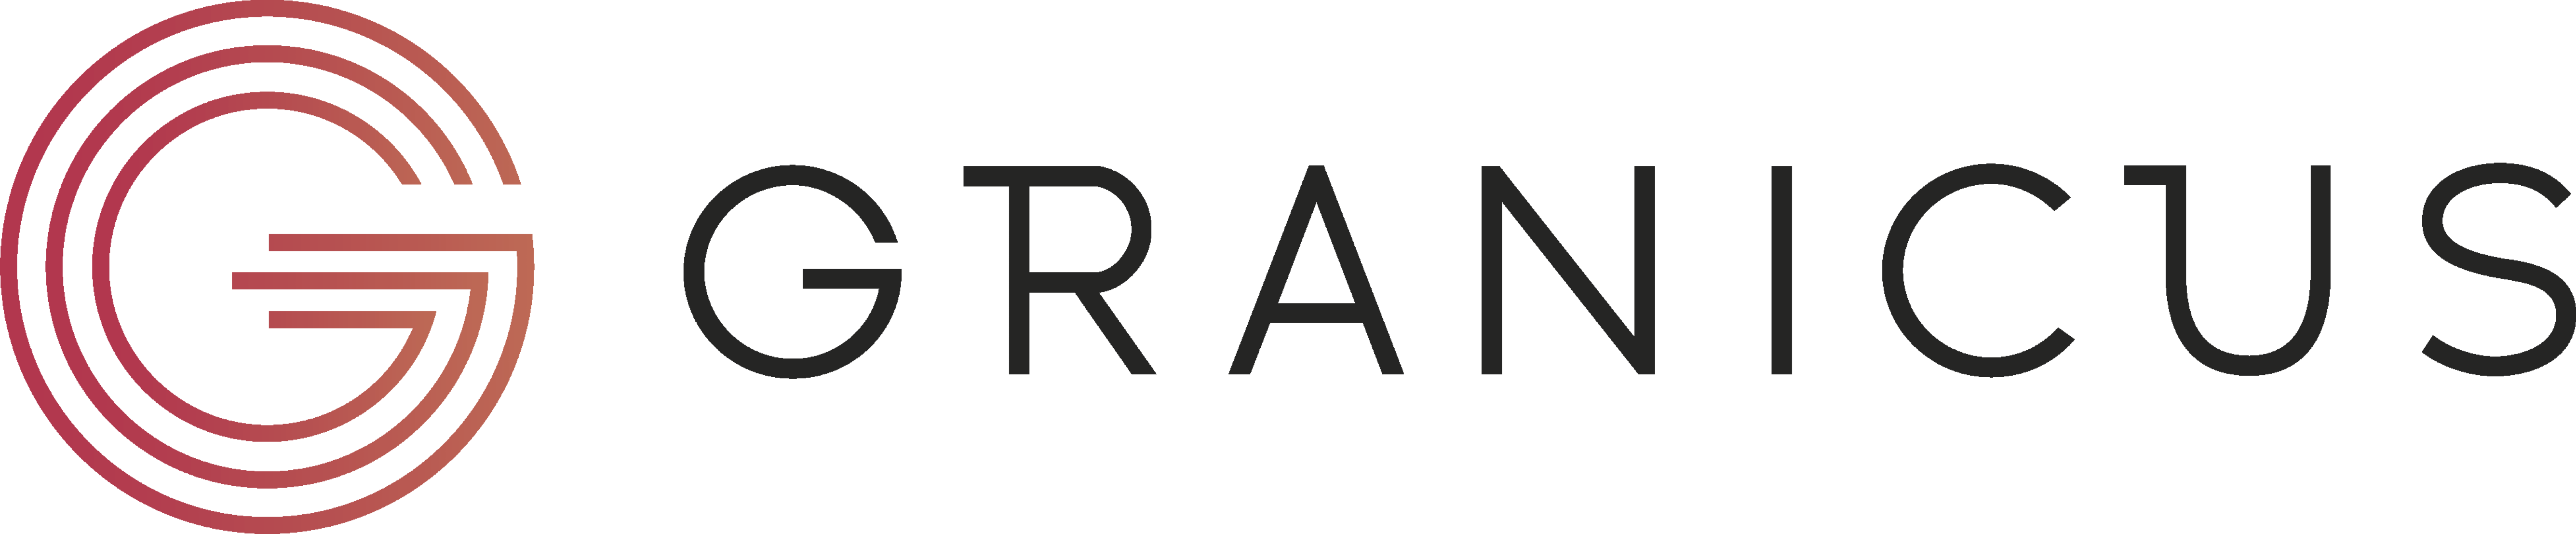 Granicus's logo